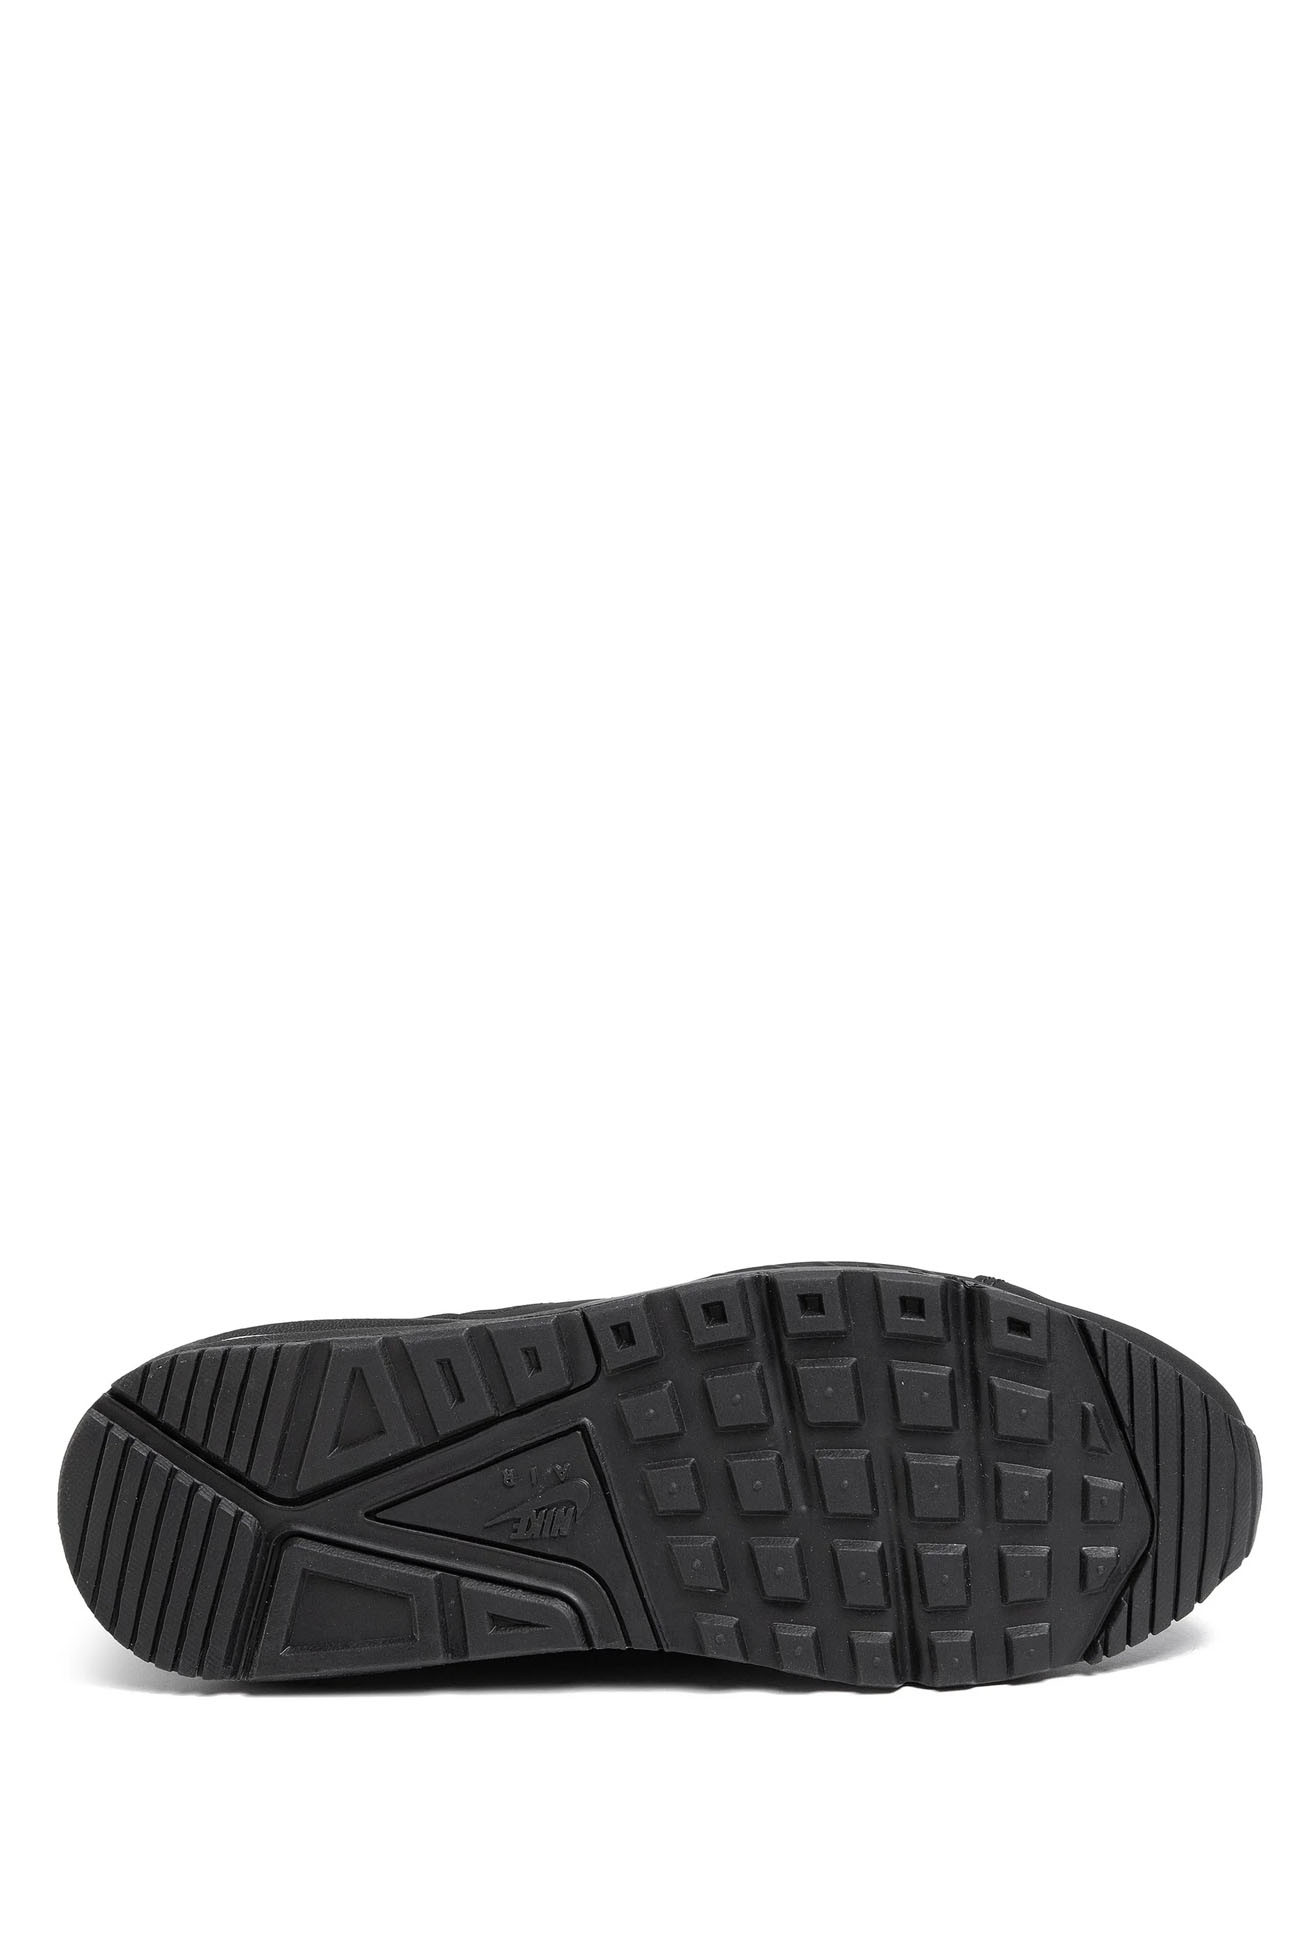 Кроссовки мужские Nike Air Max IVO Leather Shoe черные 580520-002 изображение 5